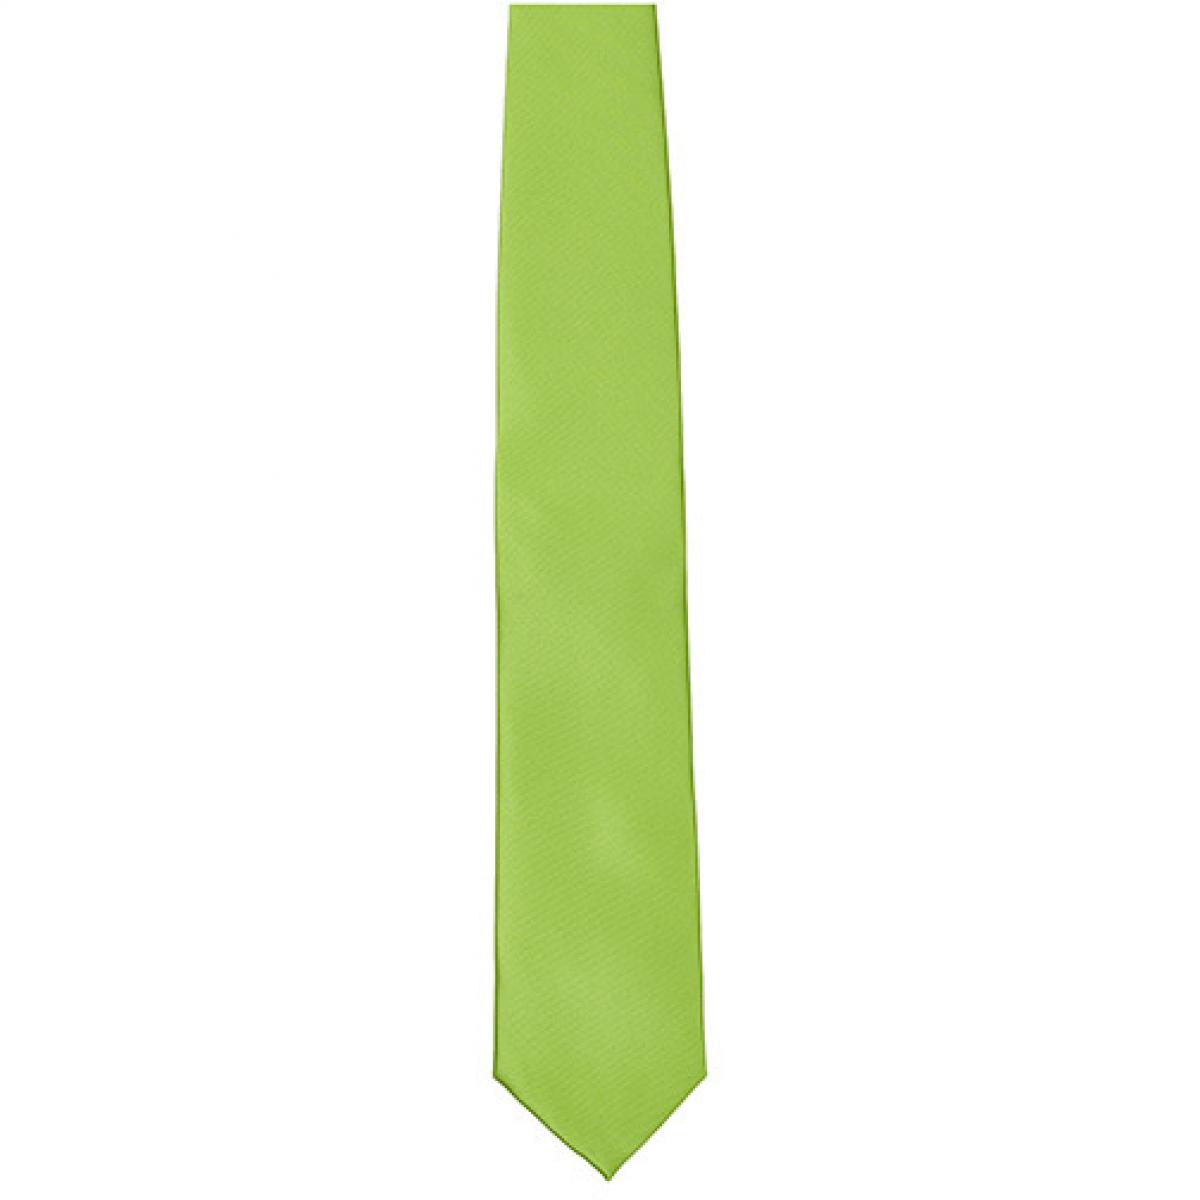 Hersteller: TYTO Herstellernummer: TT901 Artikelbezeichnung: Satin Tie / 144 x 8,5cm /  Zu 100% von Hand genäht Farbe: Lime